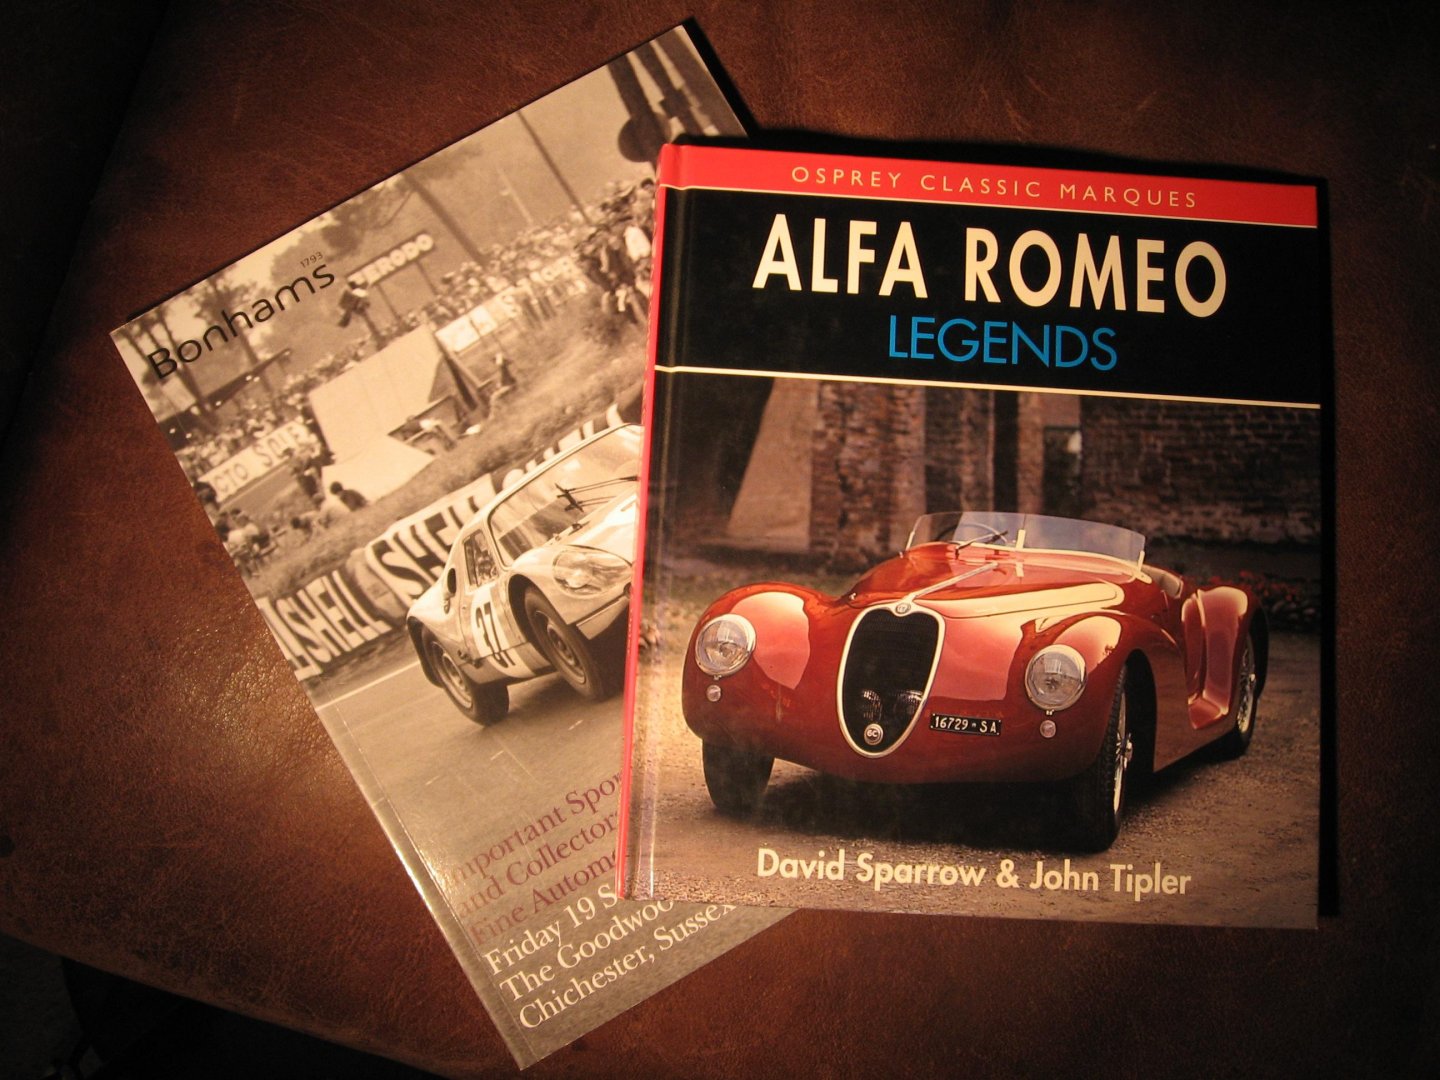 Sparrow, D. - Alfa Romeo legends.